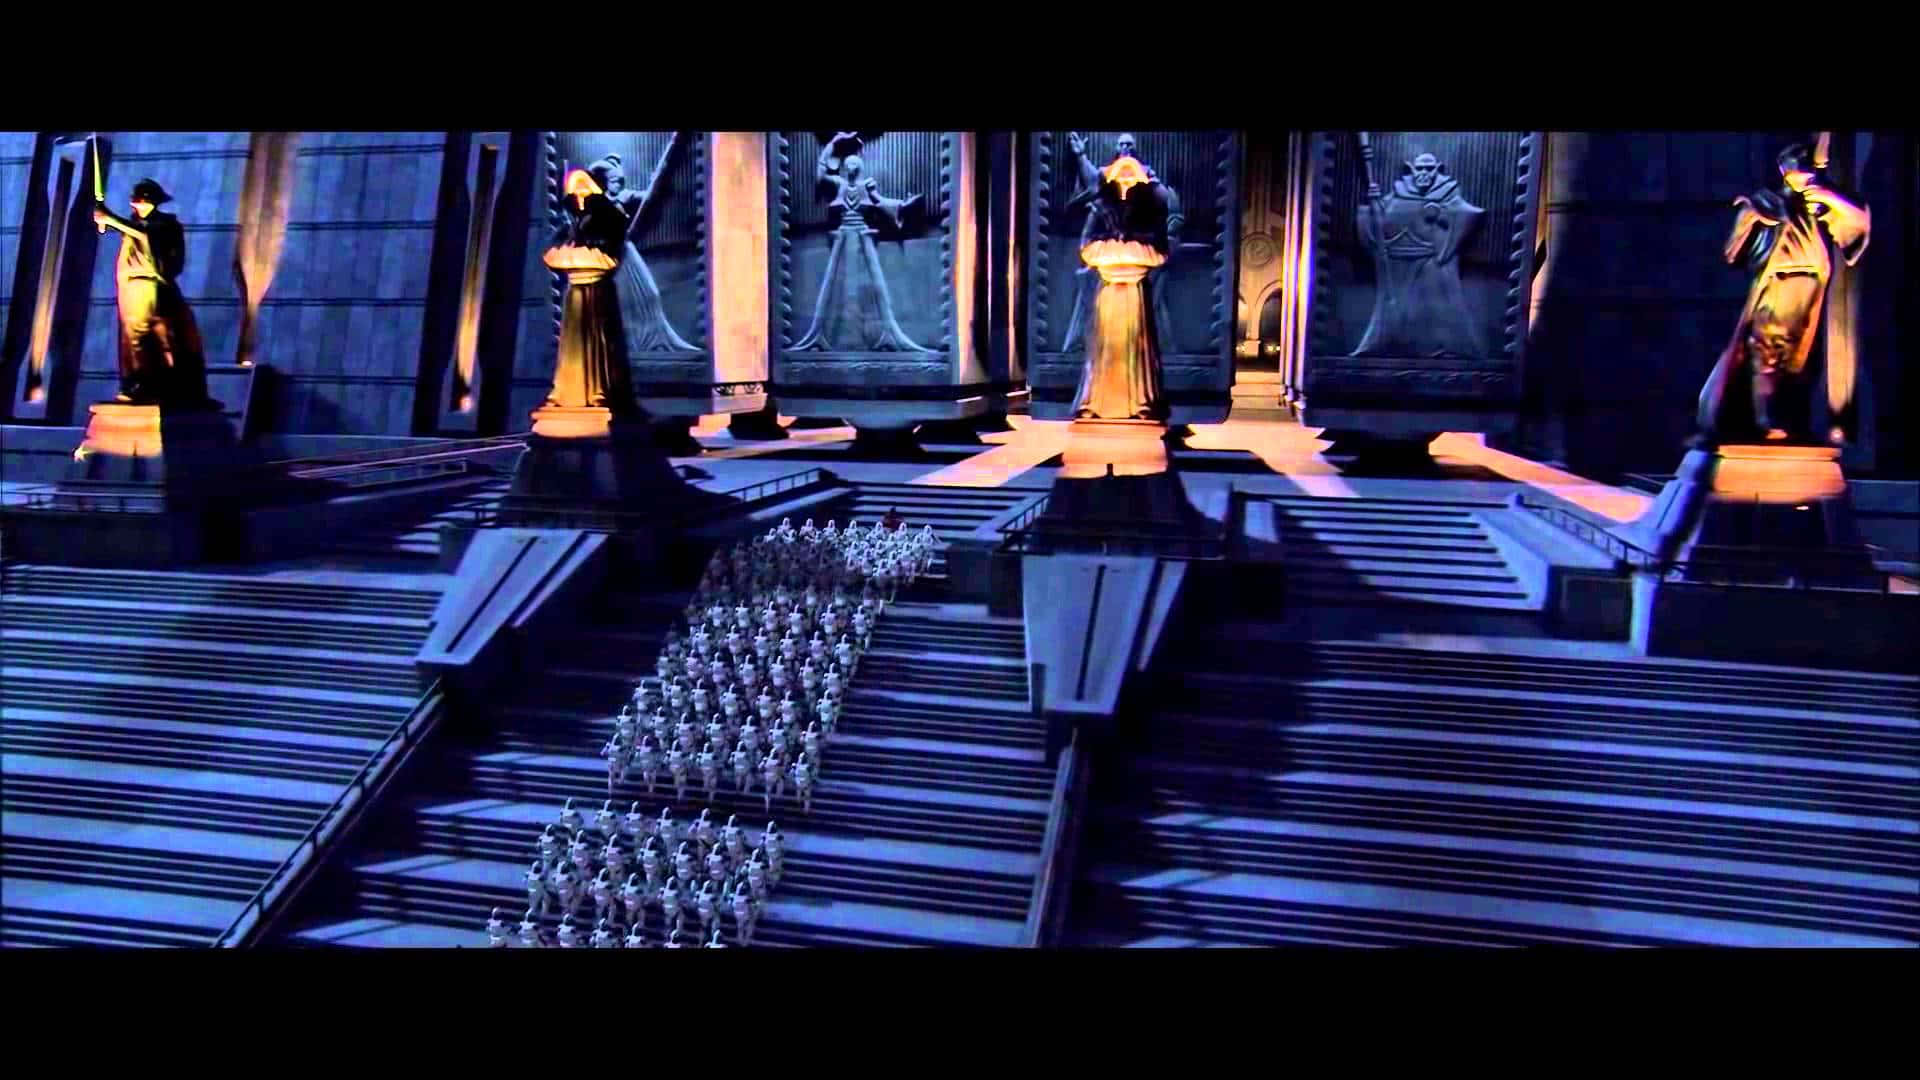 The Esteemed Jedi Council in Session Wallpaper